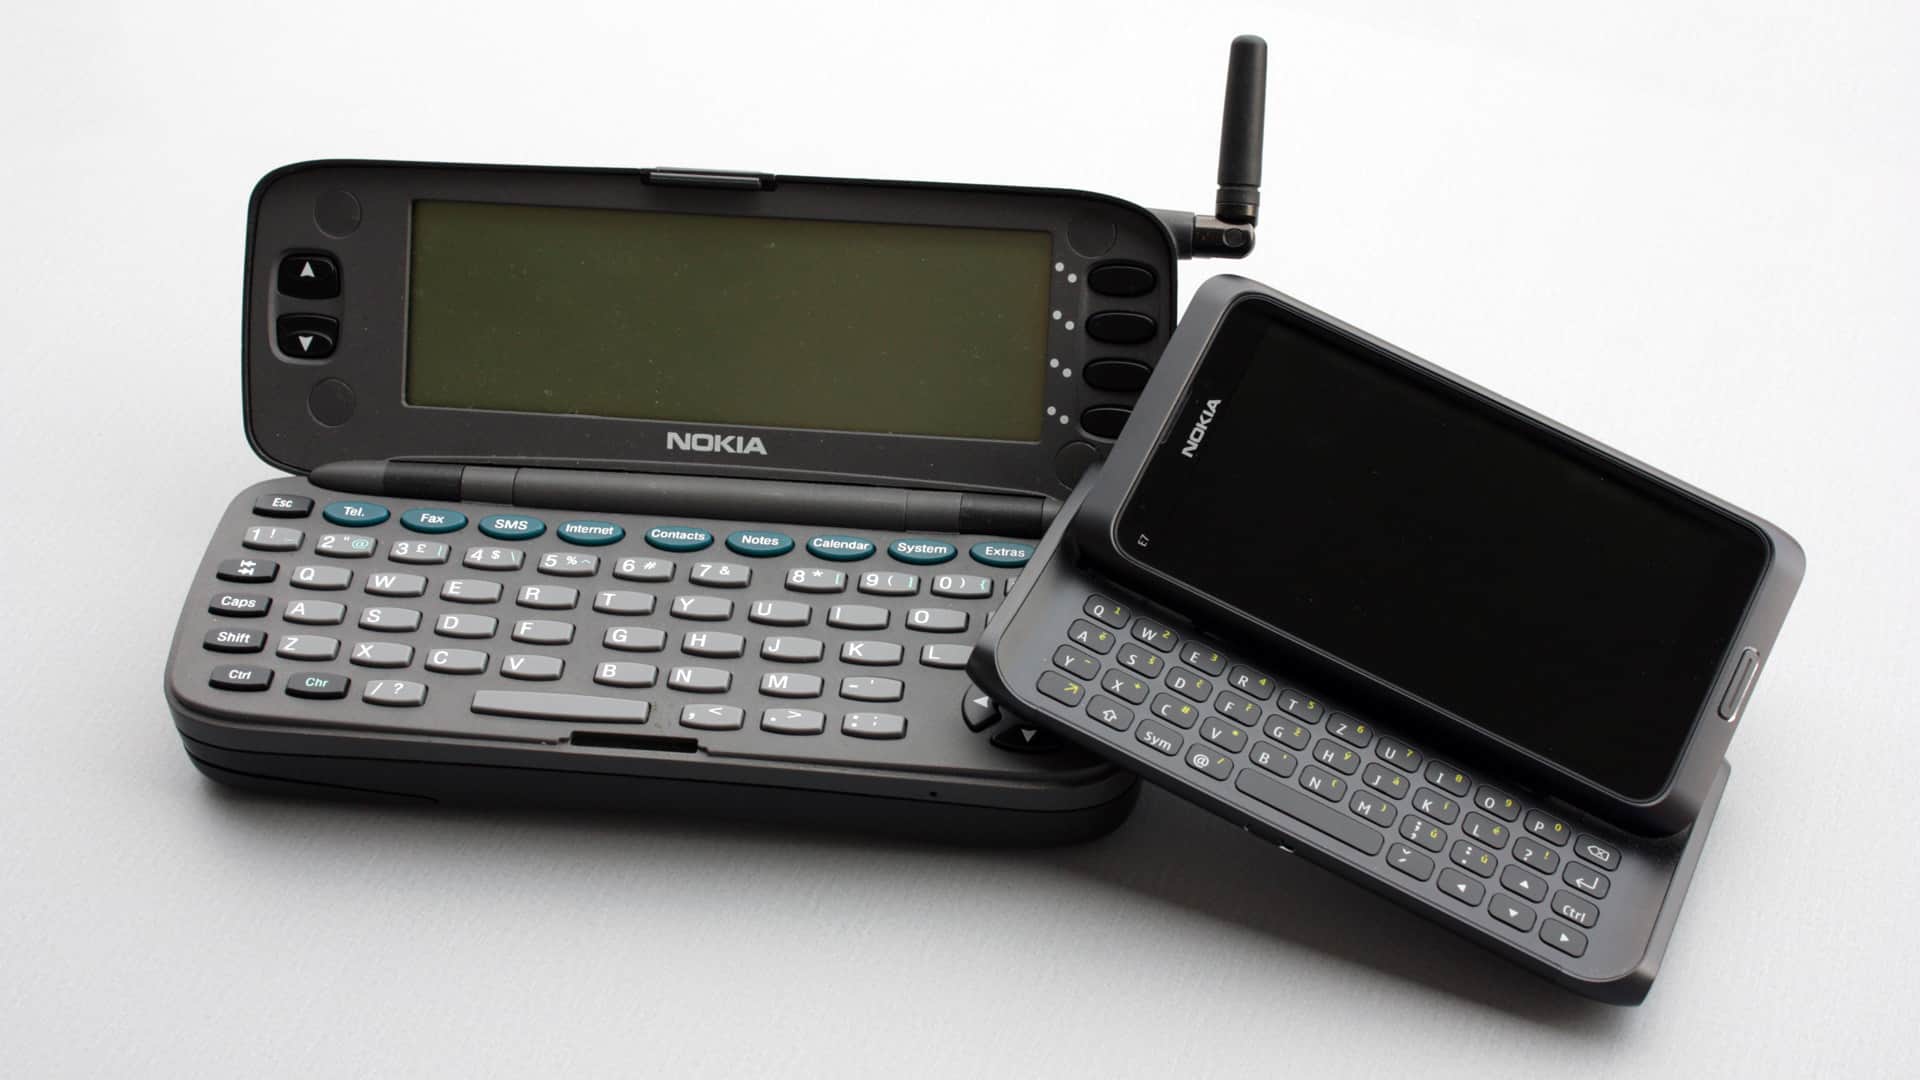 Nokia N9000